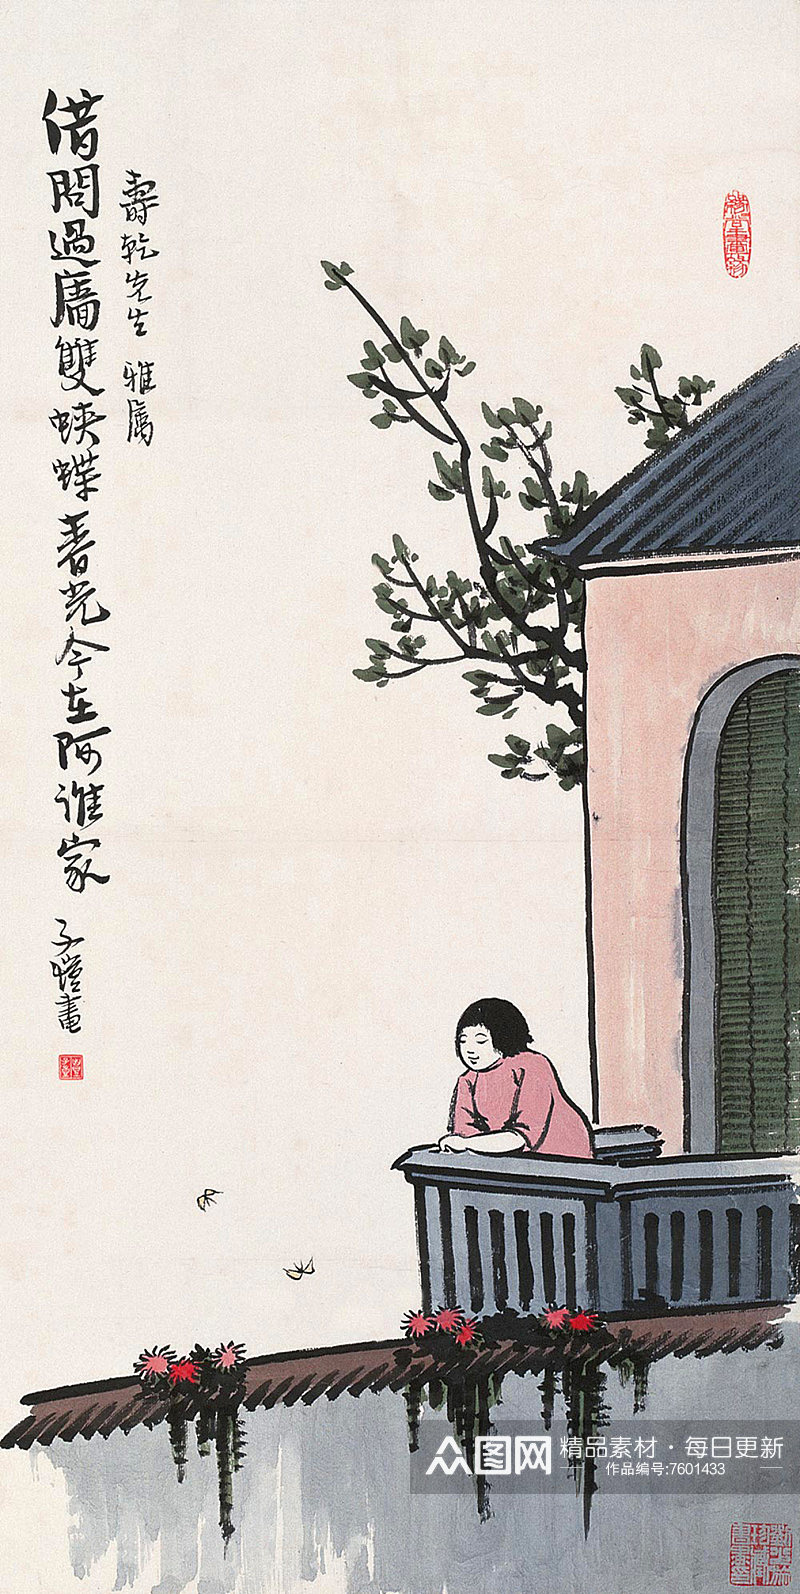 丰子恺中式风景画漫画素材